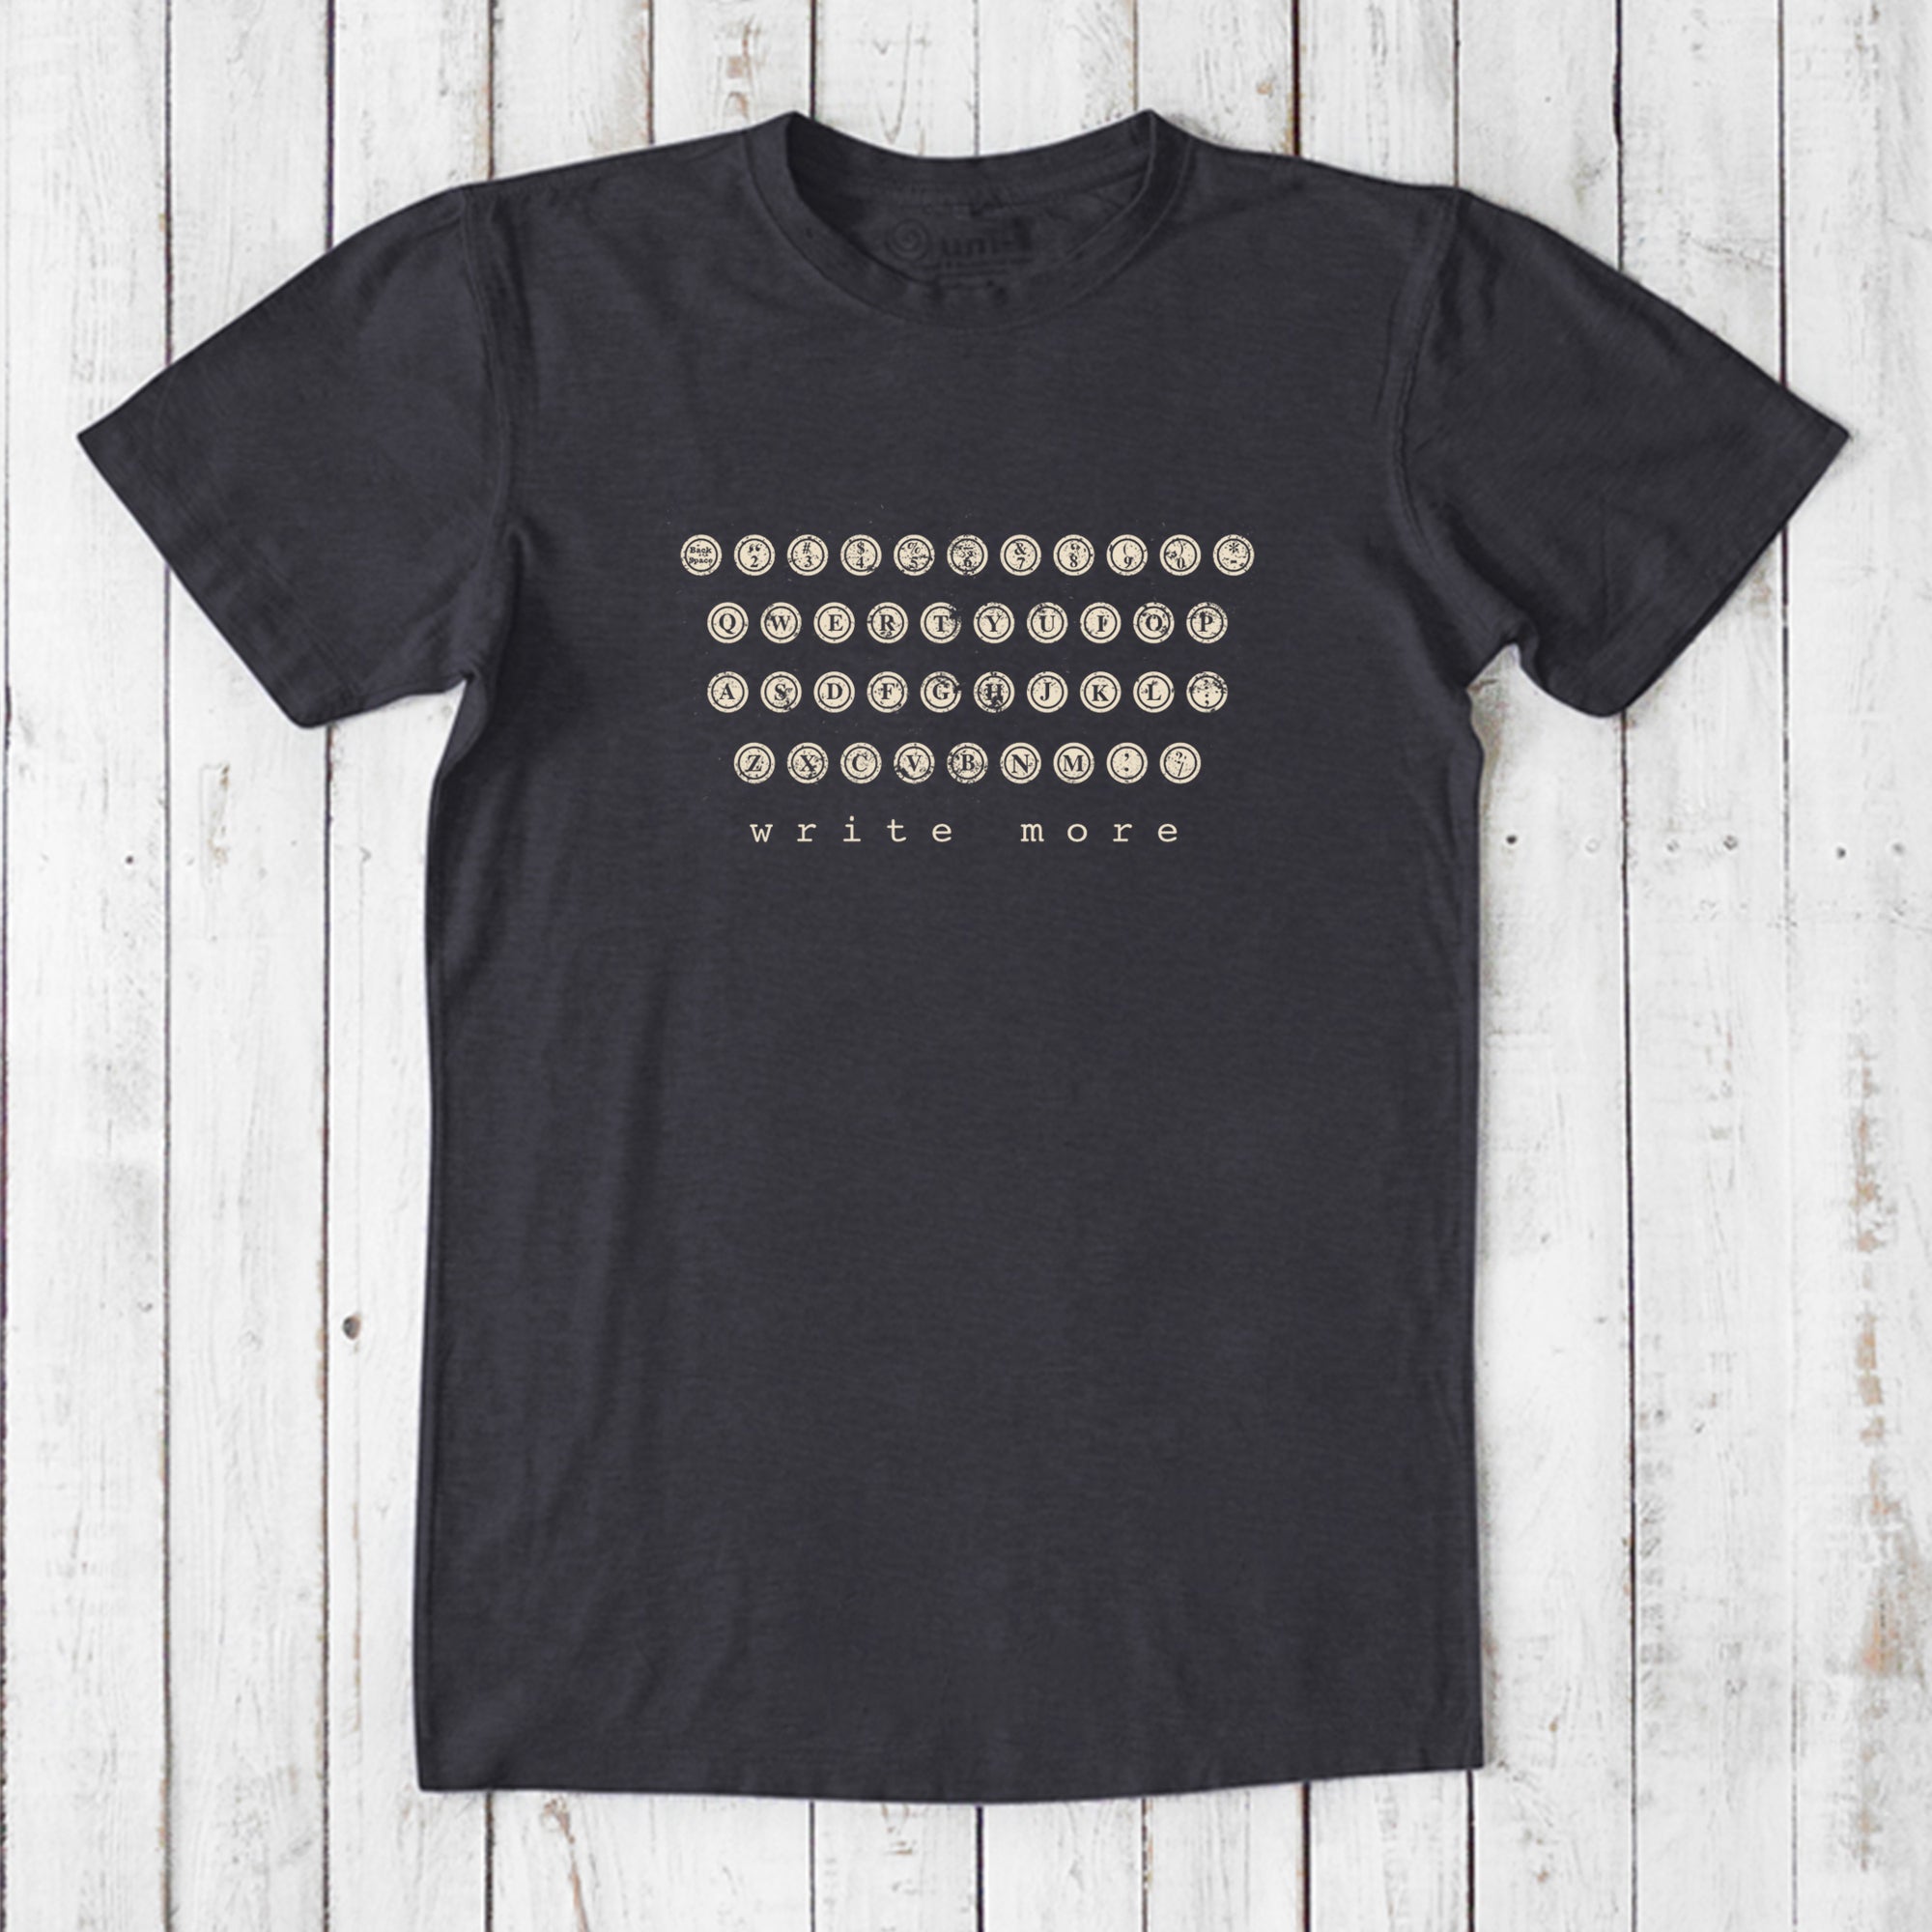 Typewriter T-shirt for Men - Write More Uni-T